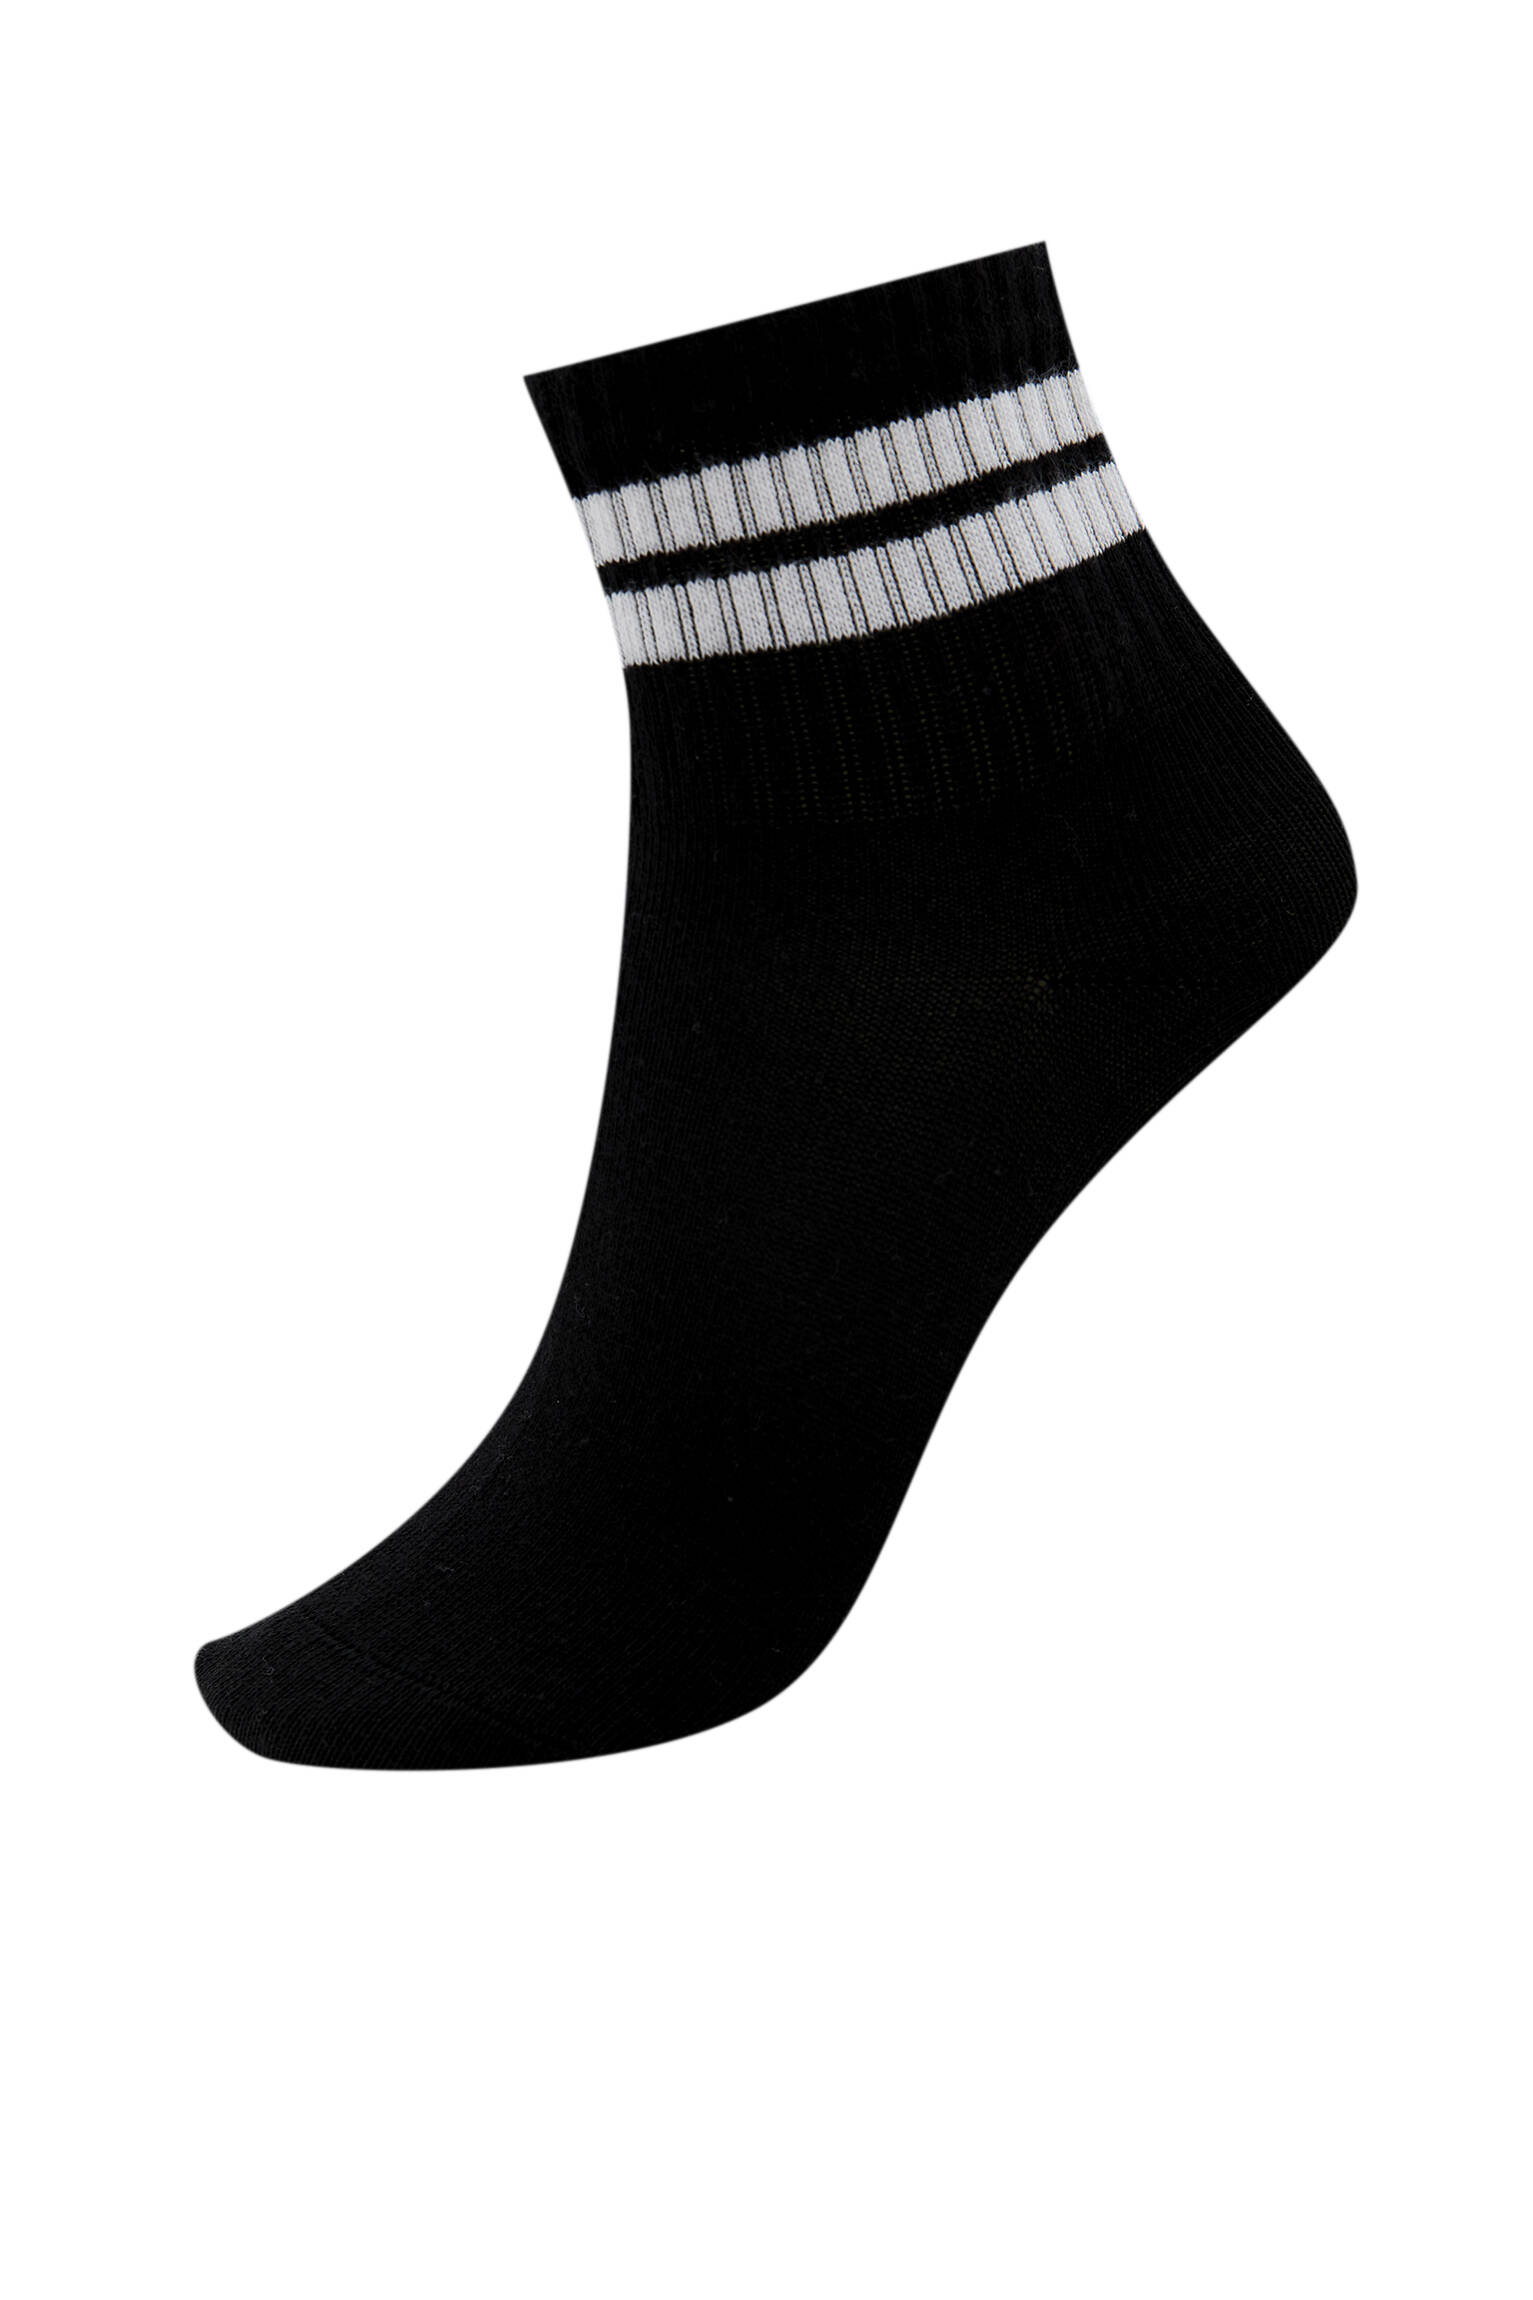 Спортивные носки с двумя полосами. Органический хлопок (не менее 75%). ЧЕРНЫЙ Pull & Bear